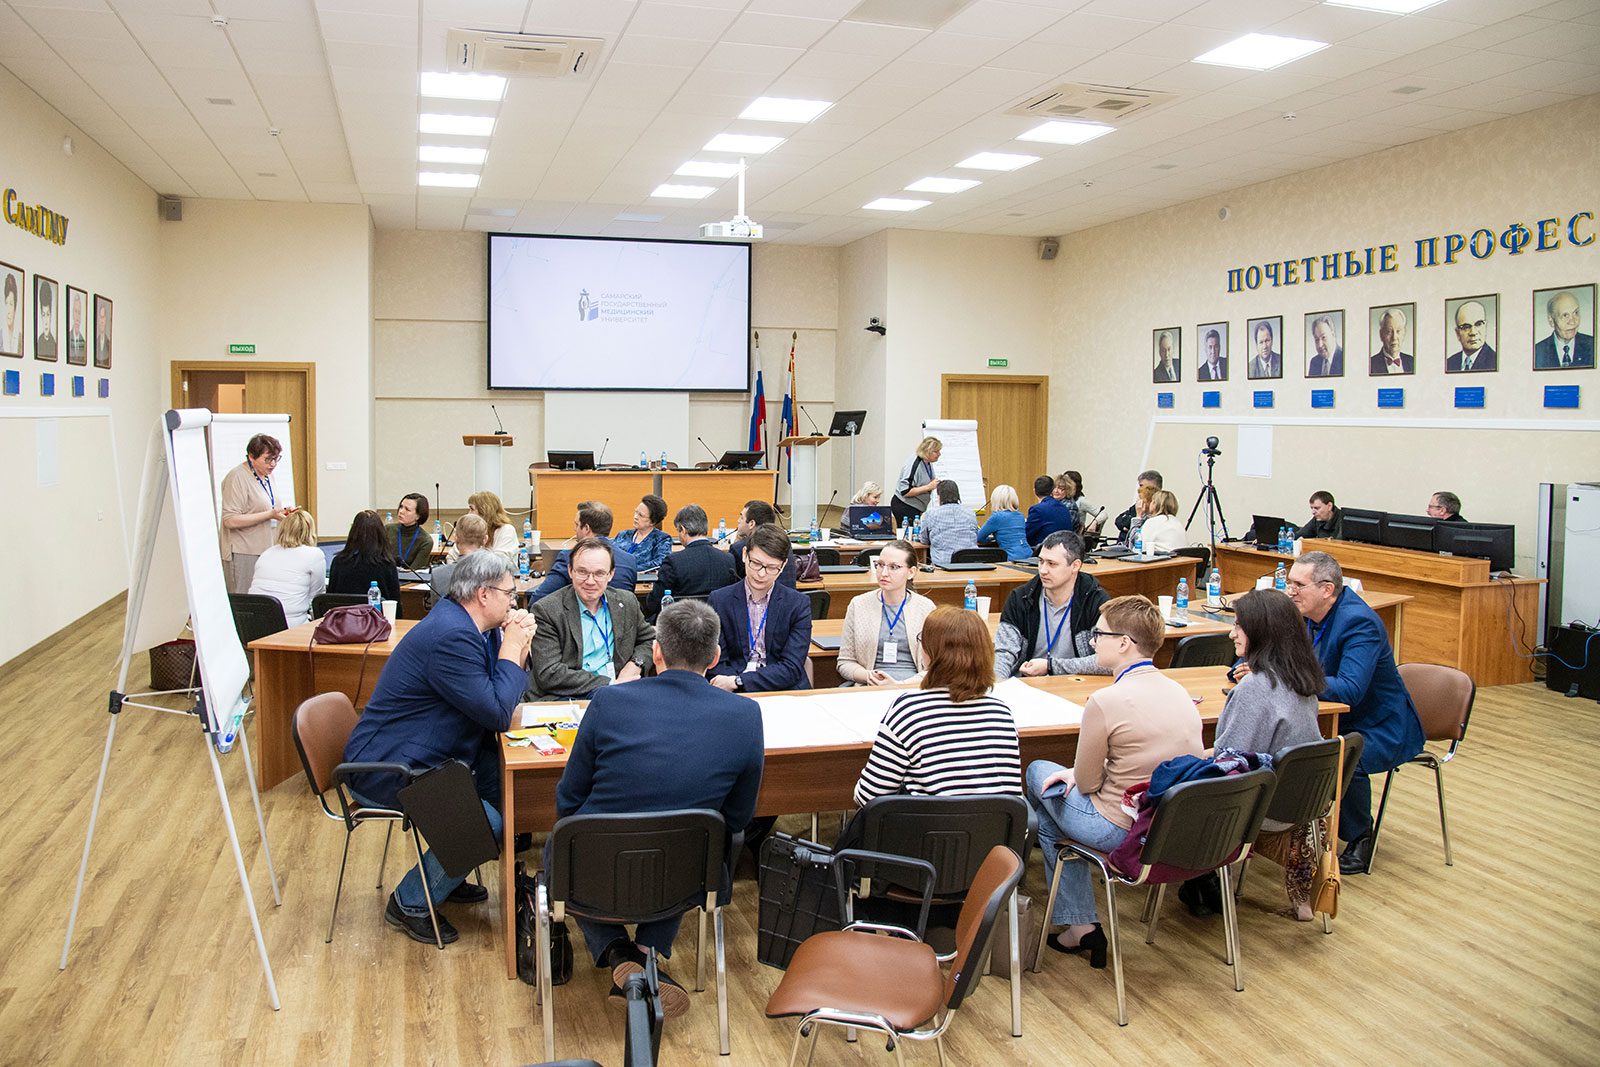 СамГМУ и Московский городской педагогический университет создали концепты восьми образовательных проектов